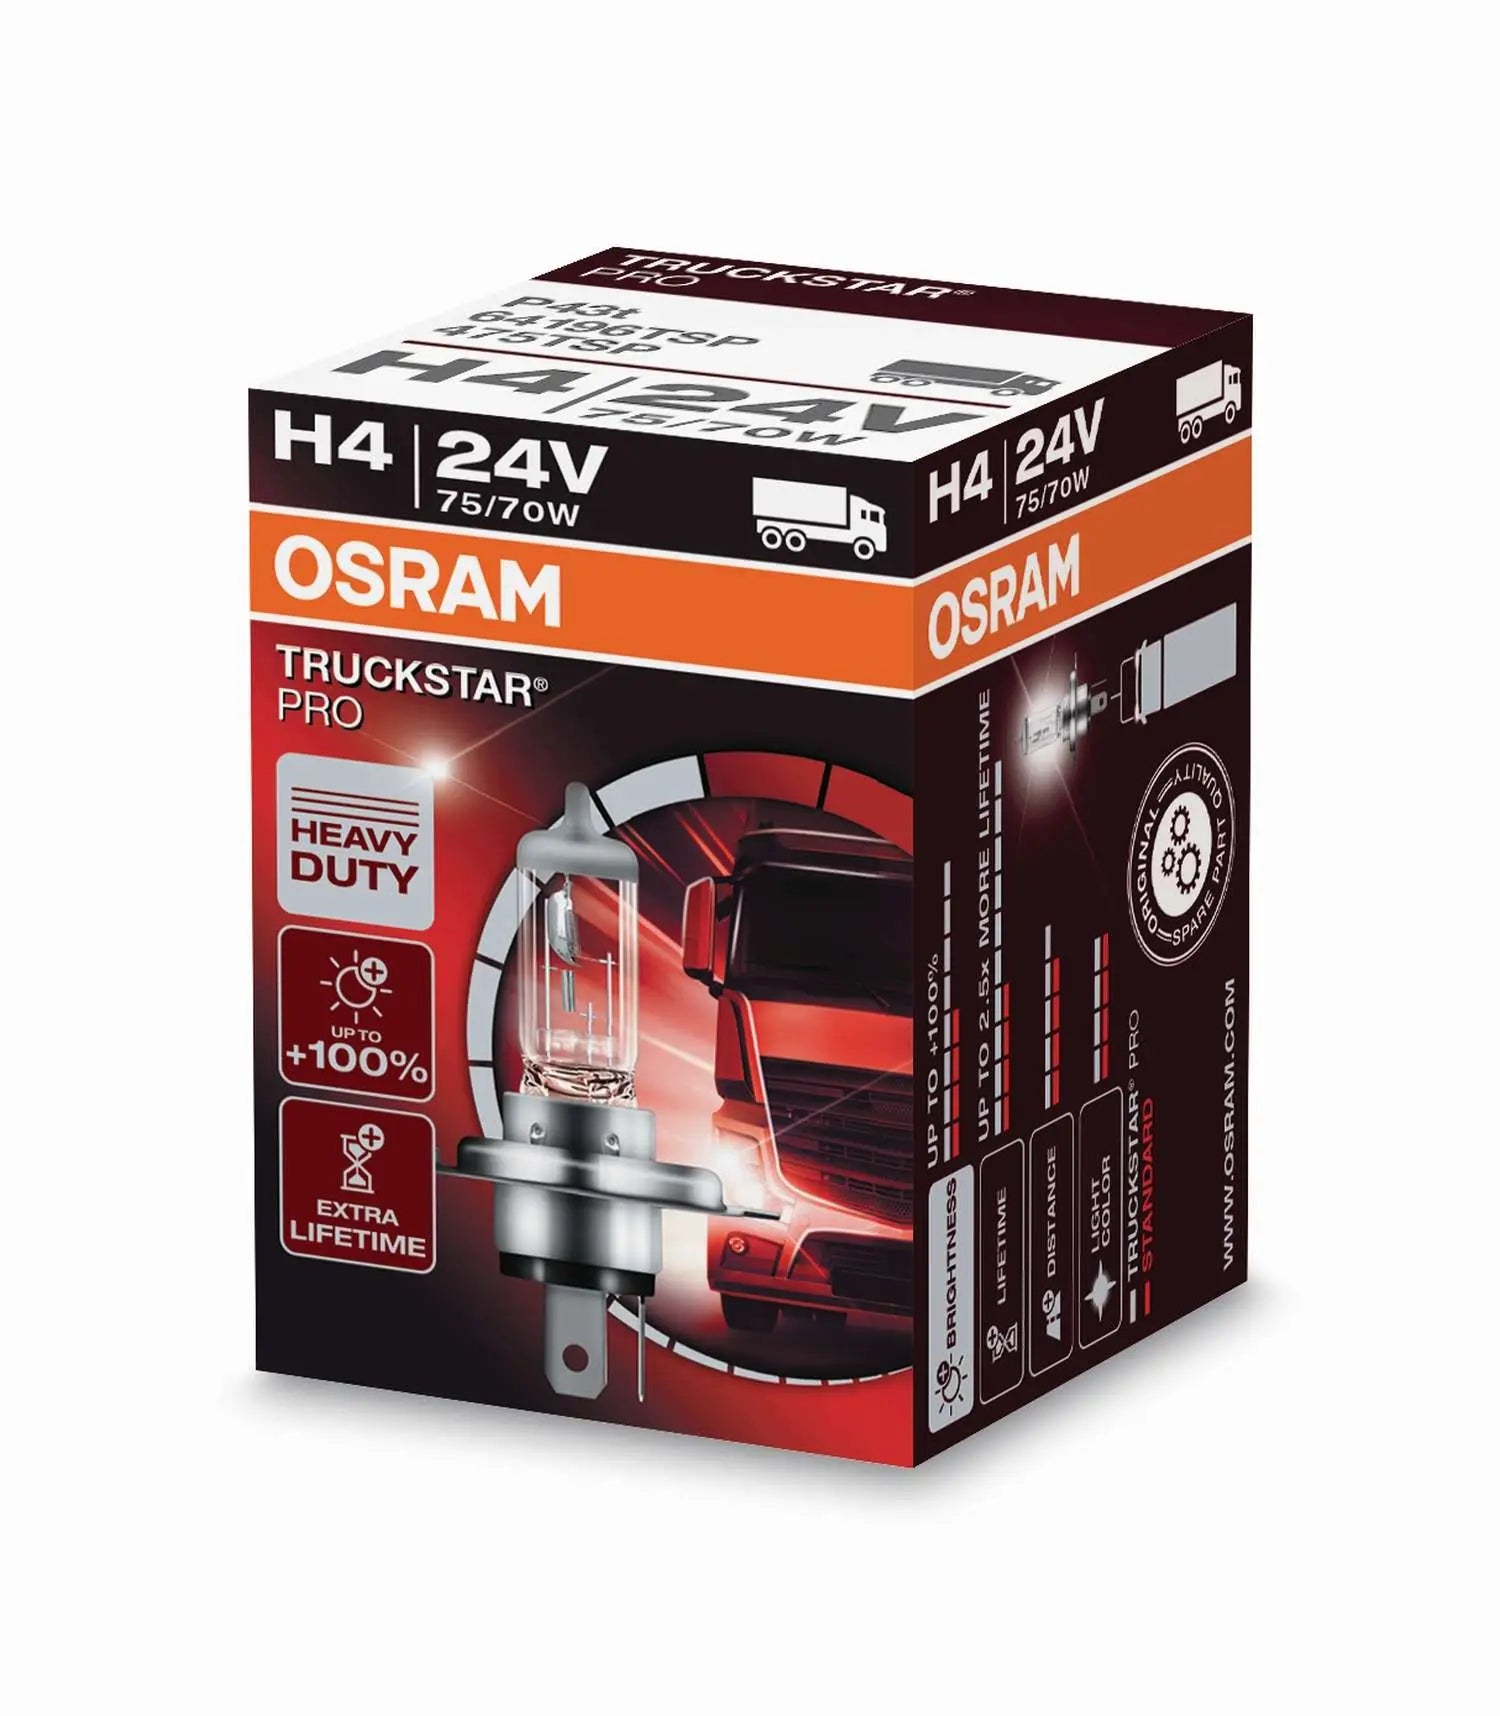 H4 24V 75/70W P43t TRUCKSTAR PRO +100% mehr Licht Faltschachtel OSRAM - Samsuns Group